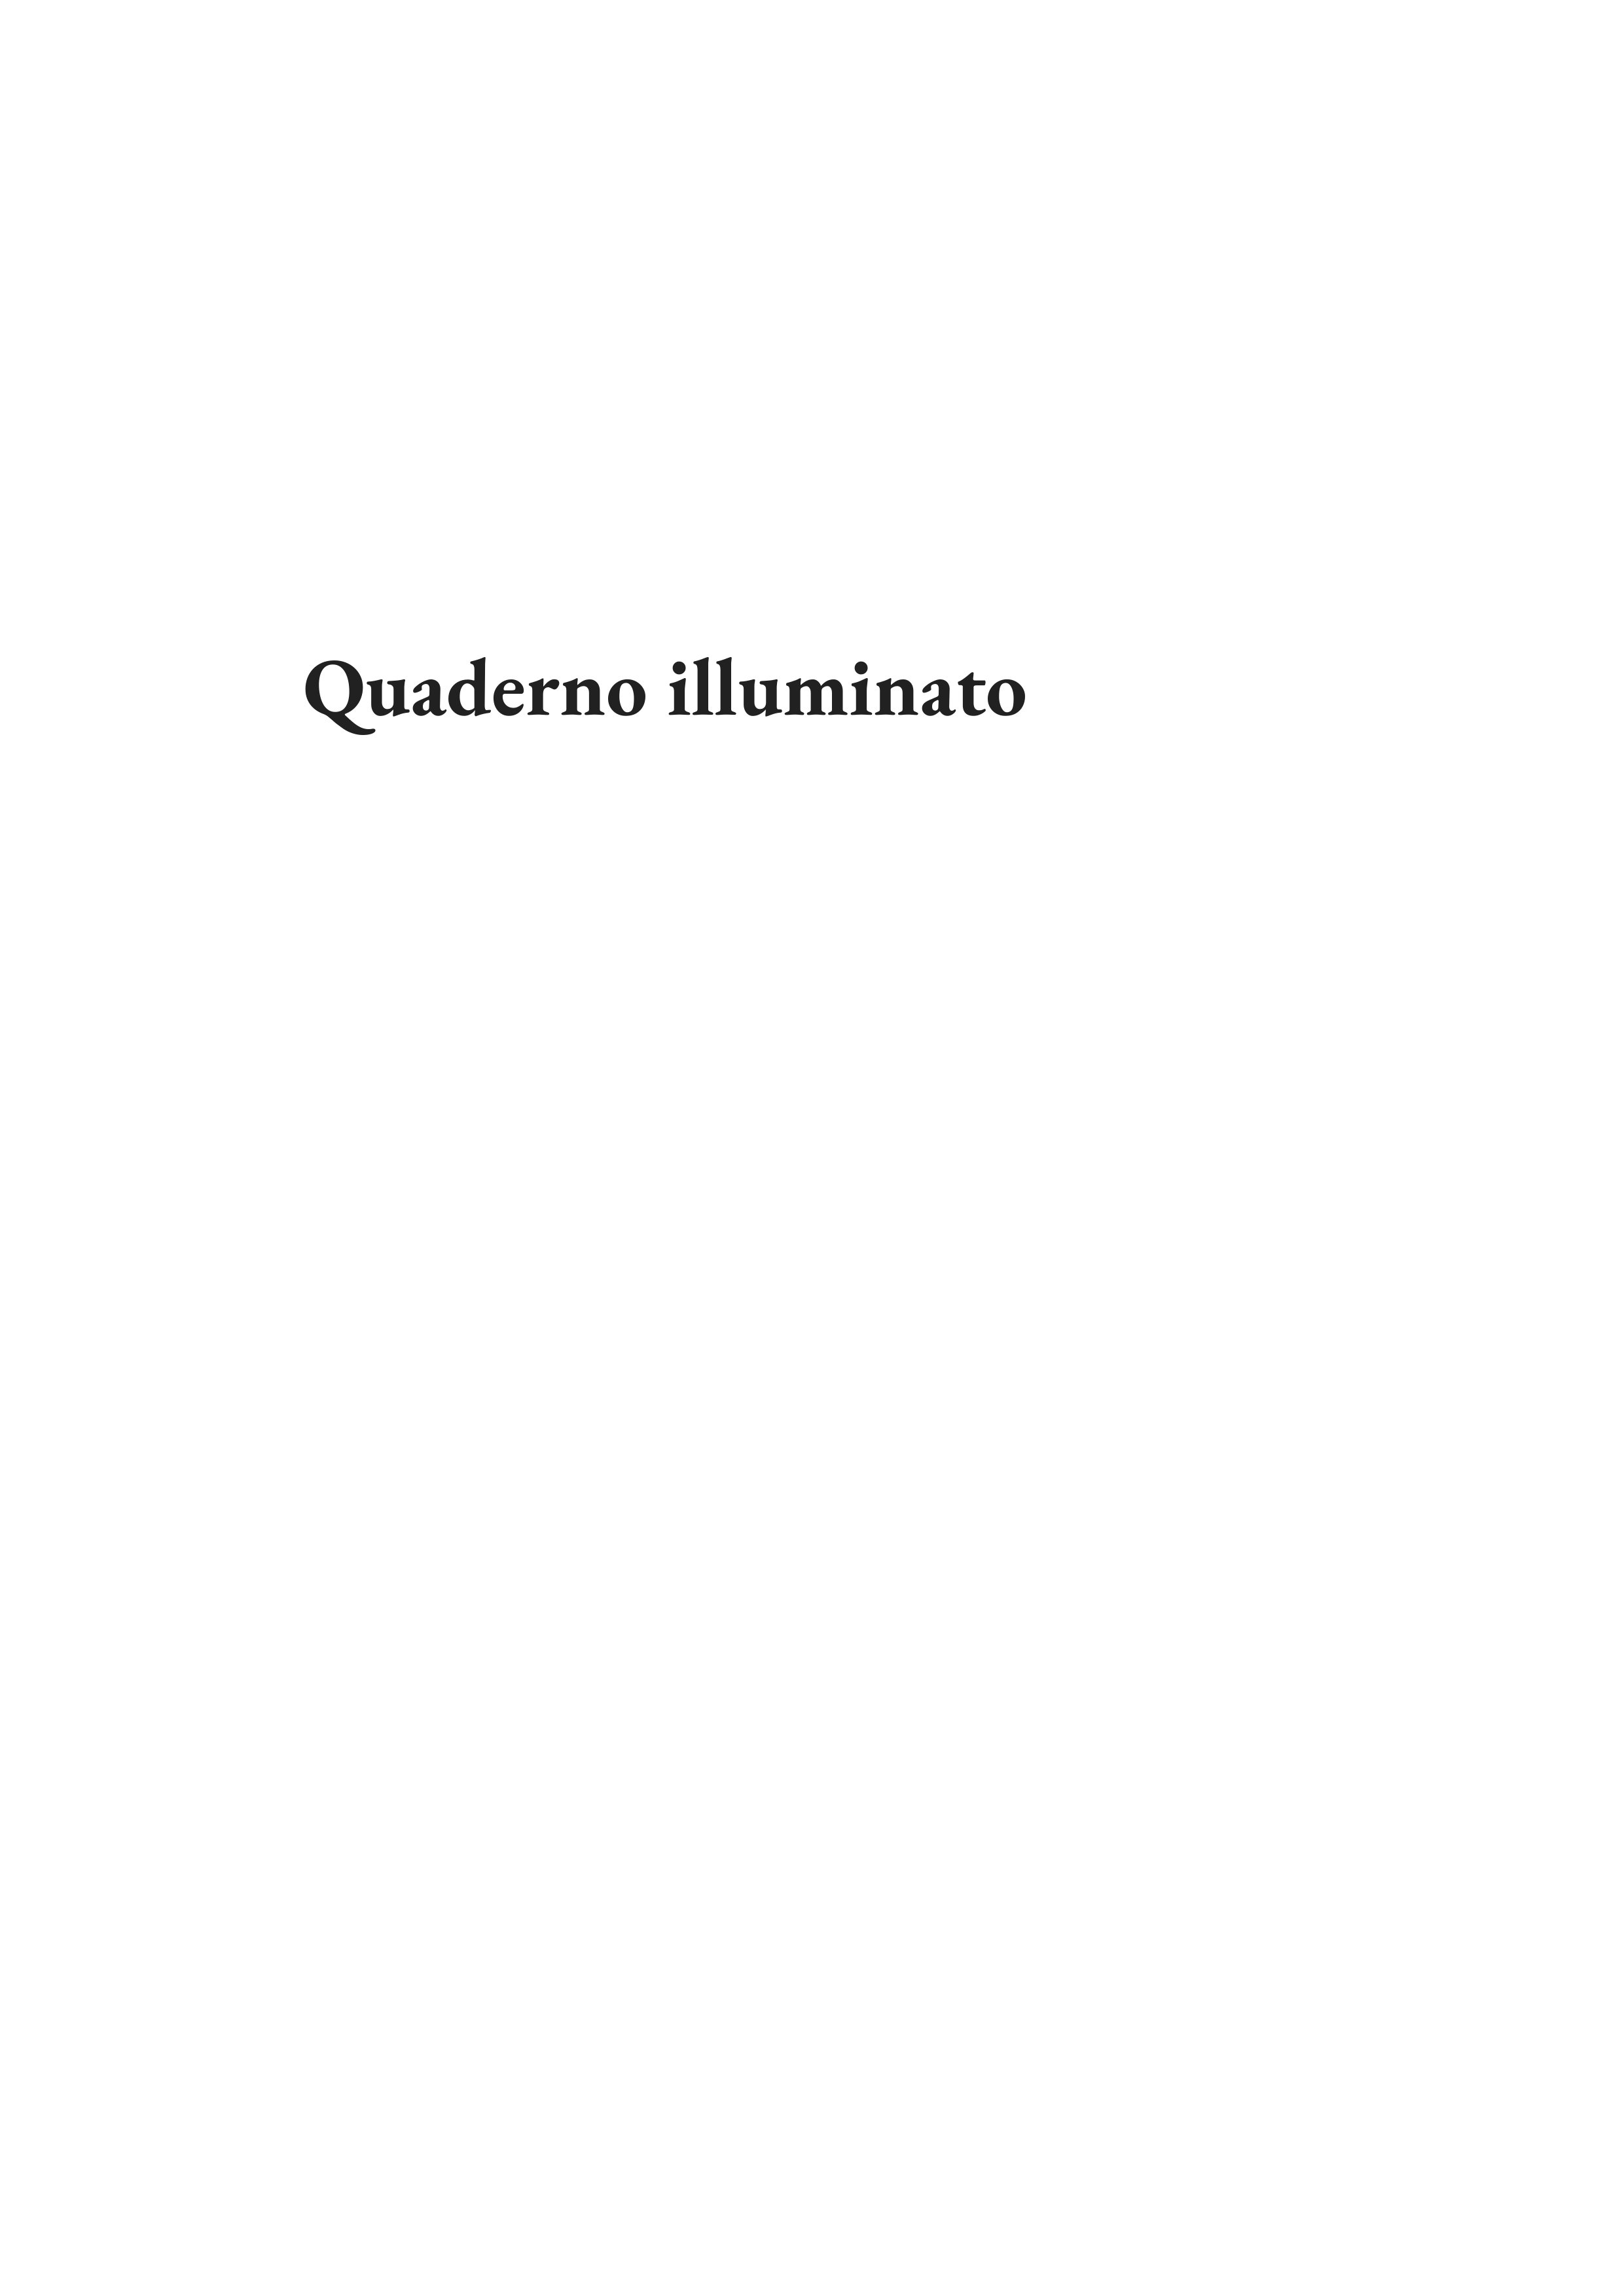 Quaderno_Illuminato_v1_a4_an_to_jpg_page-0003.jpg